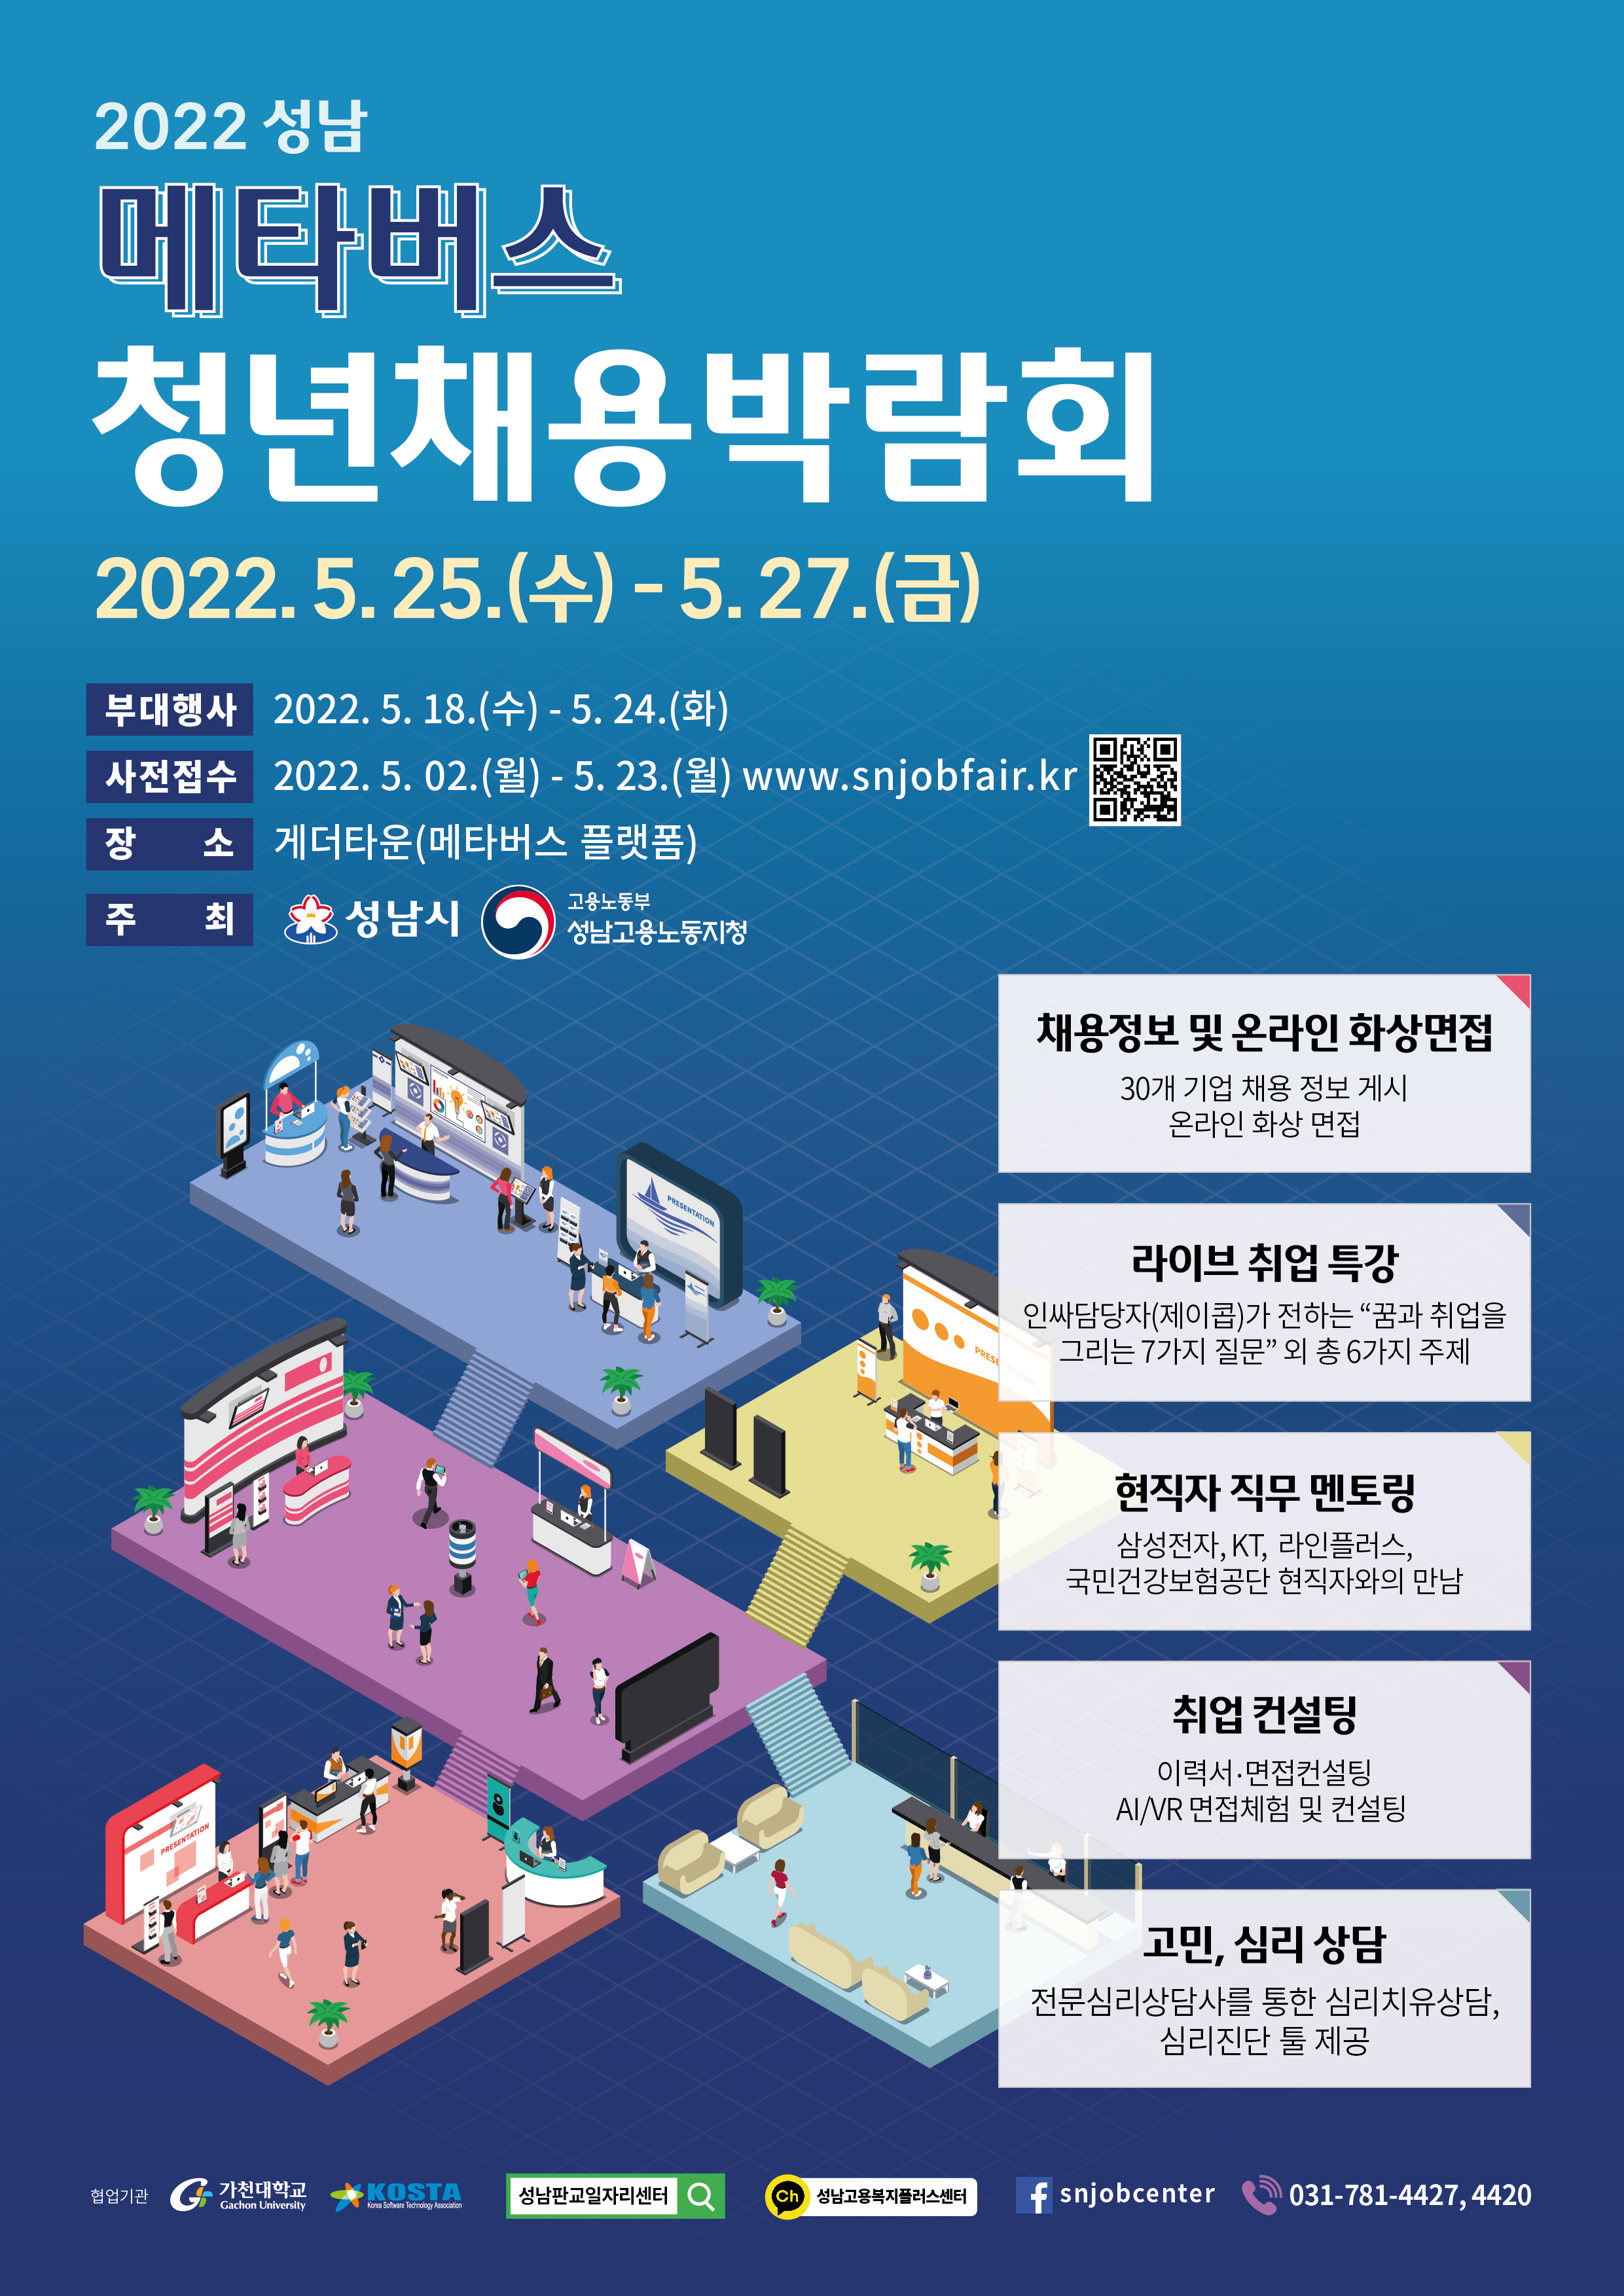 『2022 성남 메타버스 청년채용박람회』 개최